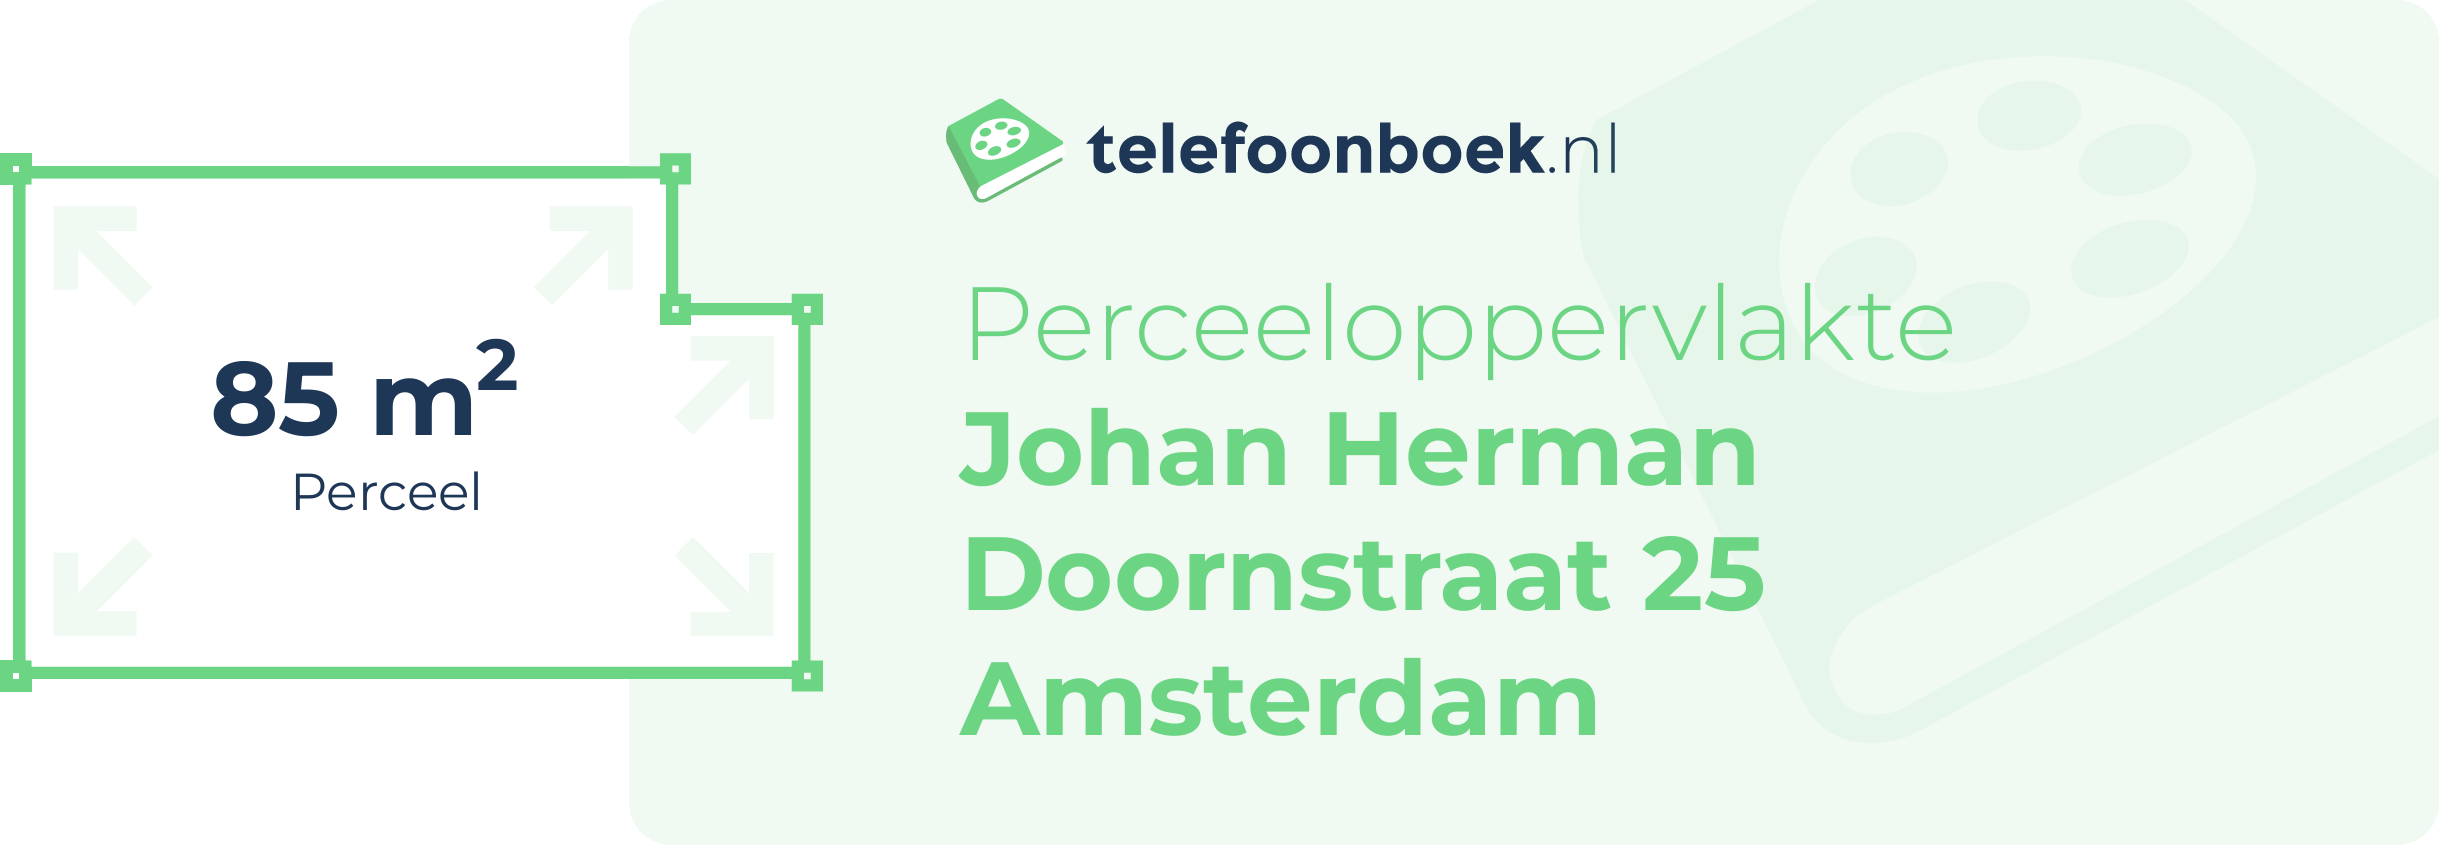 Perceeloppervlakte Johan Herman Doornstraat 25 Amsterdam